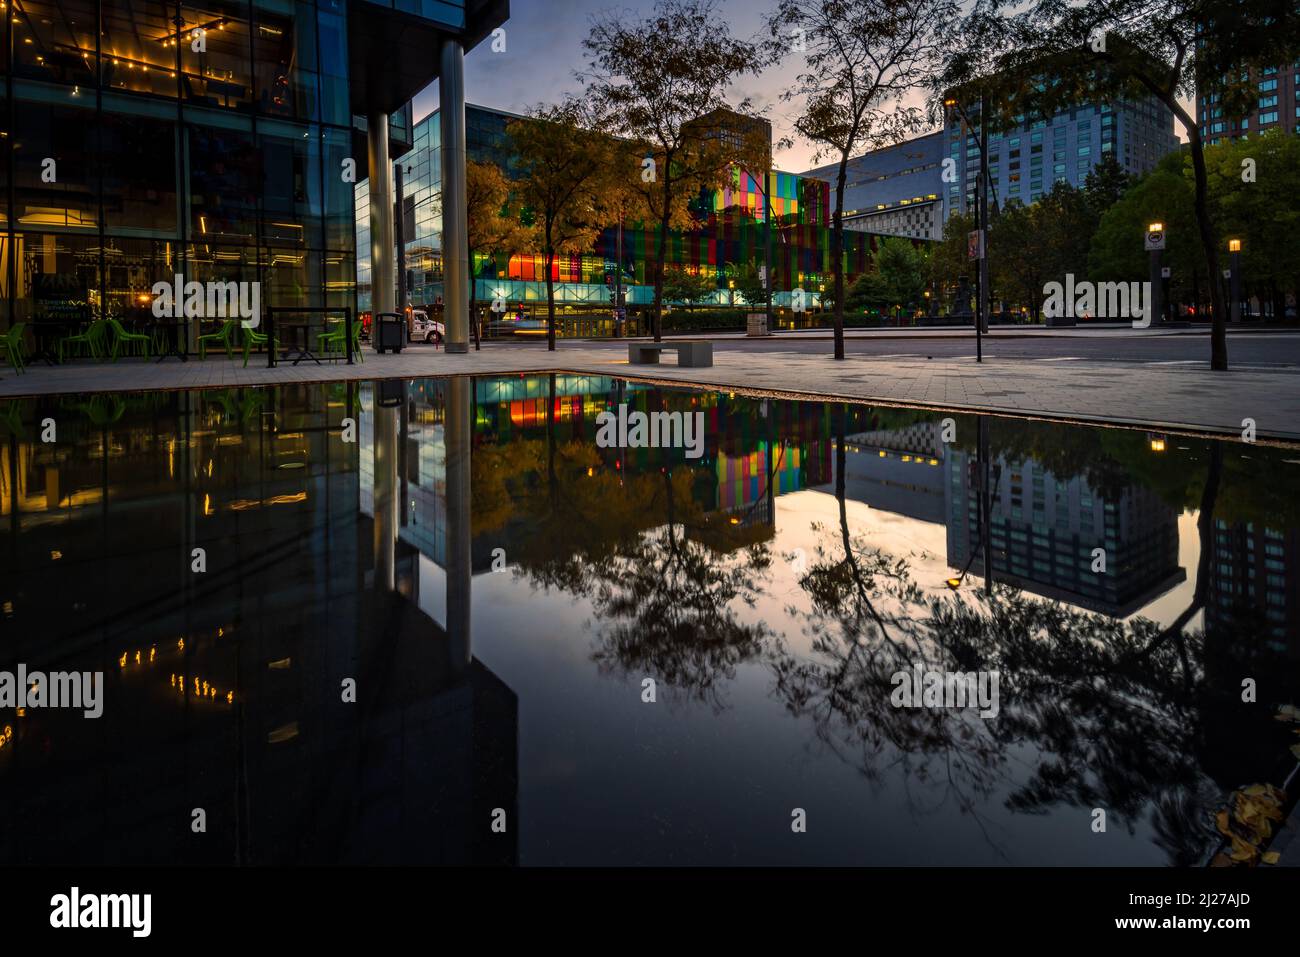 Reflet du Palais des congrès de Montréal dans une fontaine aux fenêtres colorées Banque D'Images